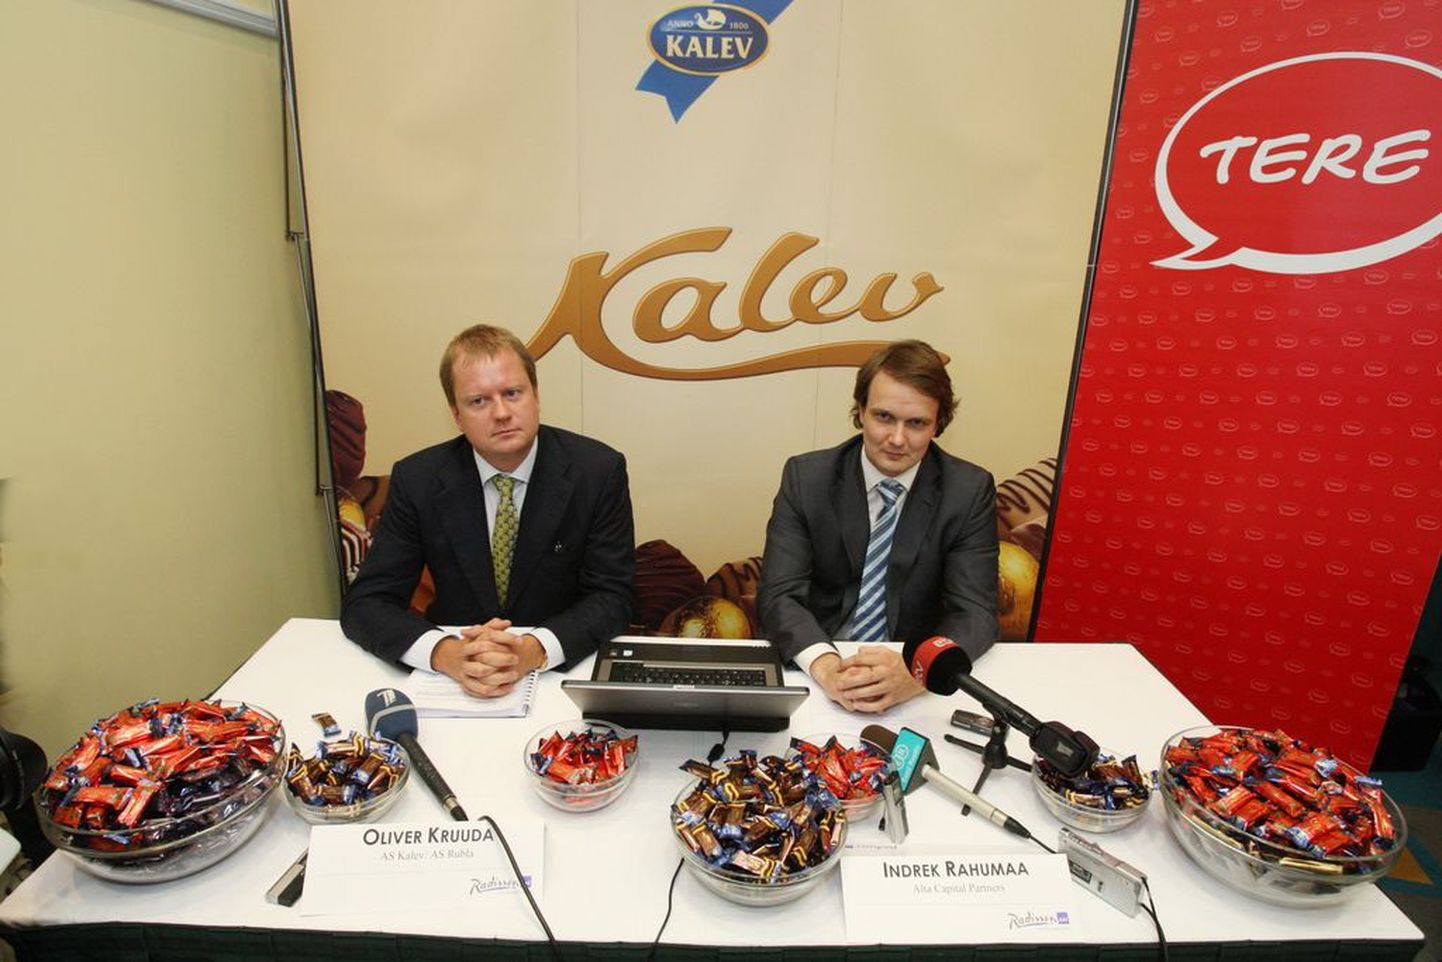 Oliver Kruuda (vasakul) ja Indrek Rahumaa (paremal) Kalevi ja Tere ostutehingu pressikonverentsil 2007. aasta septembris..